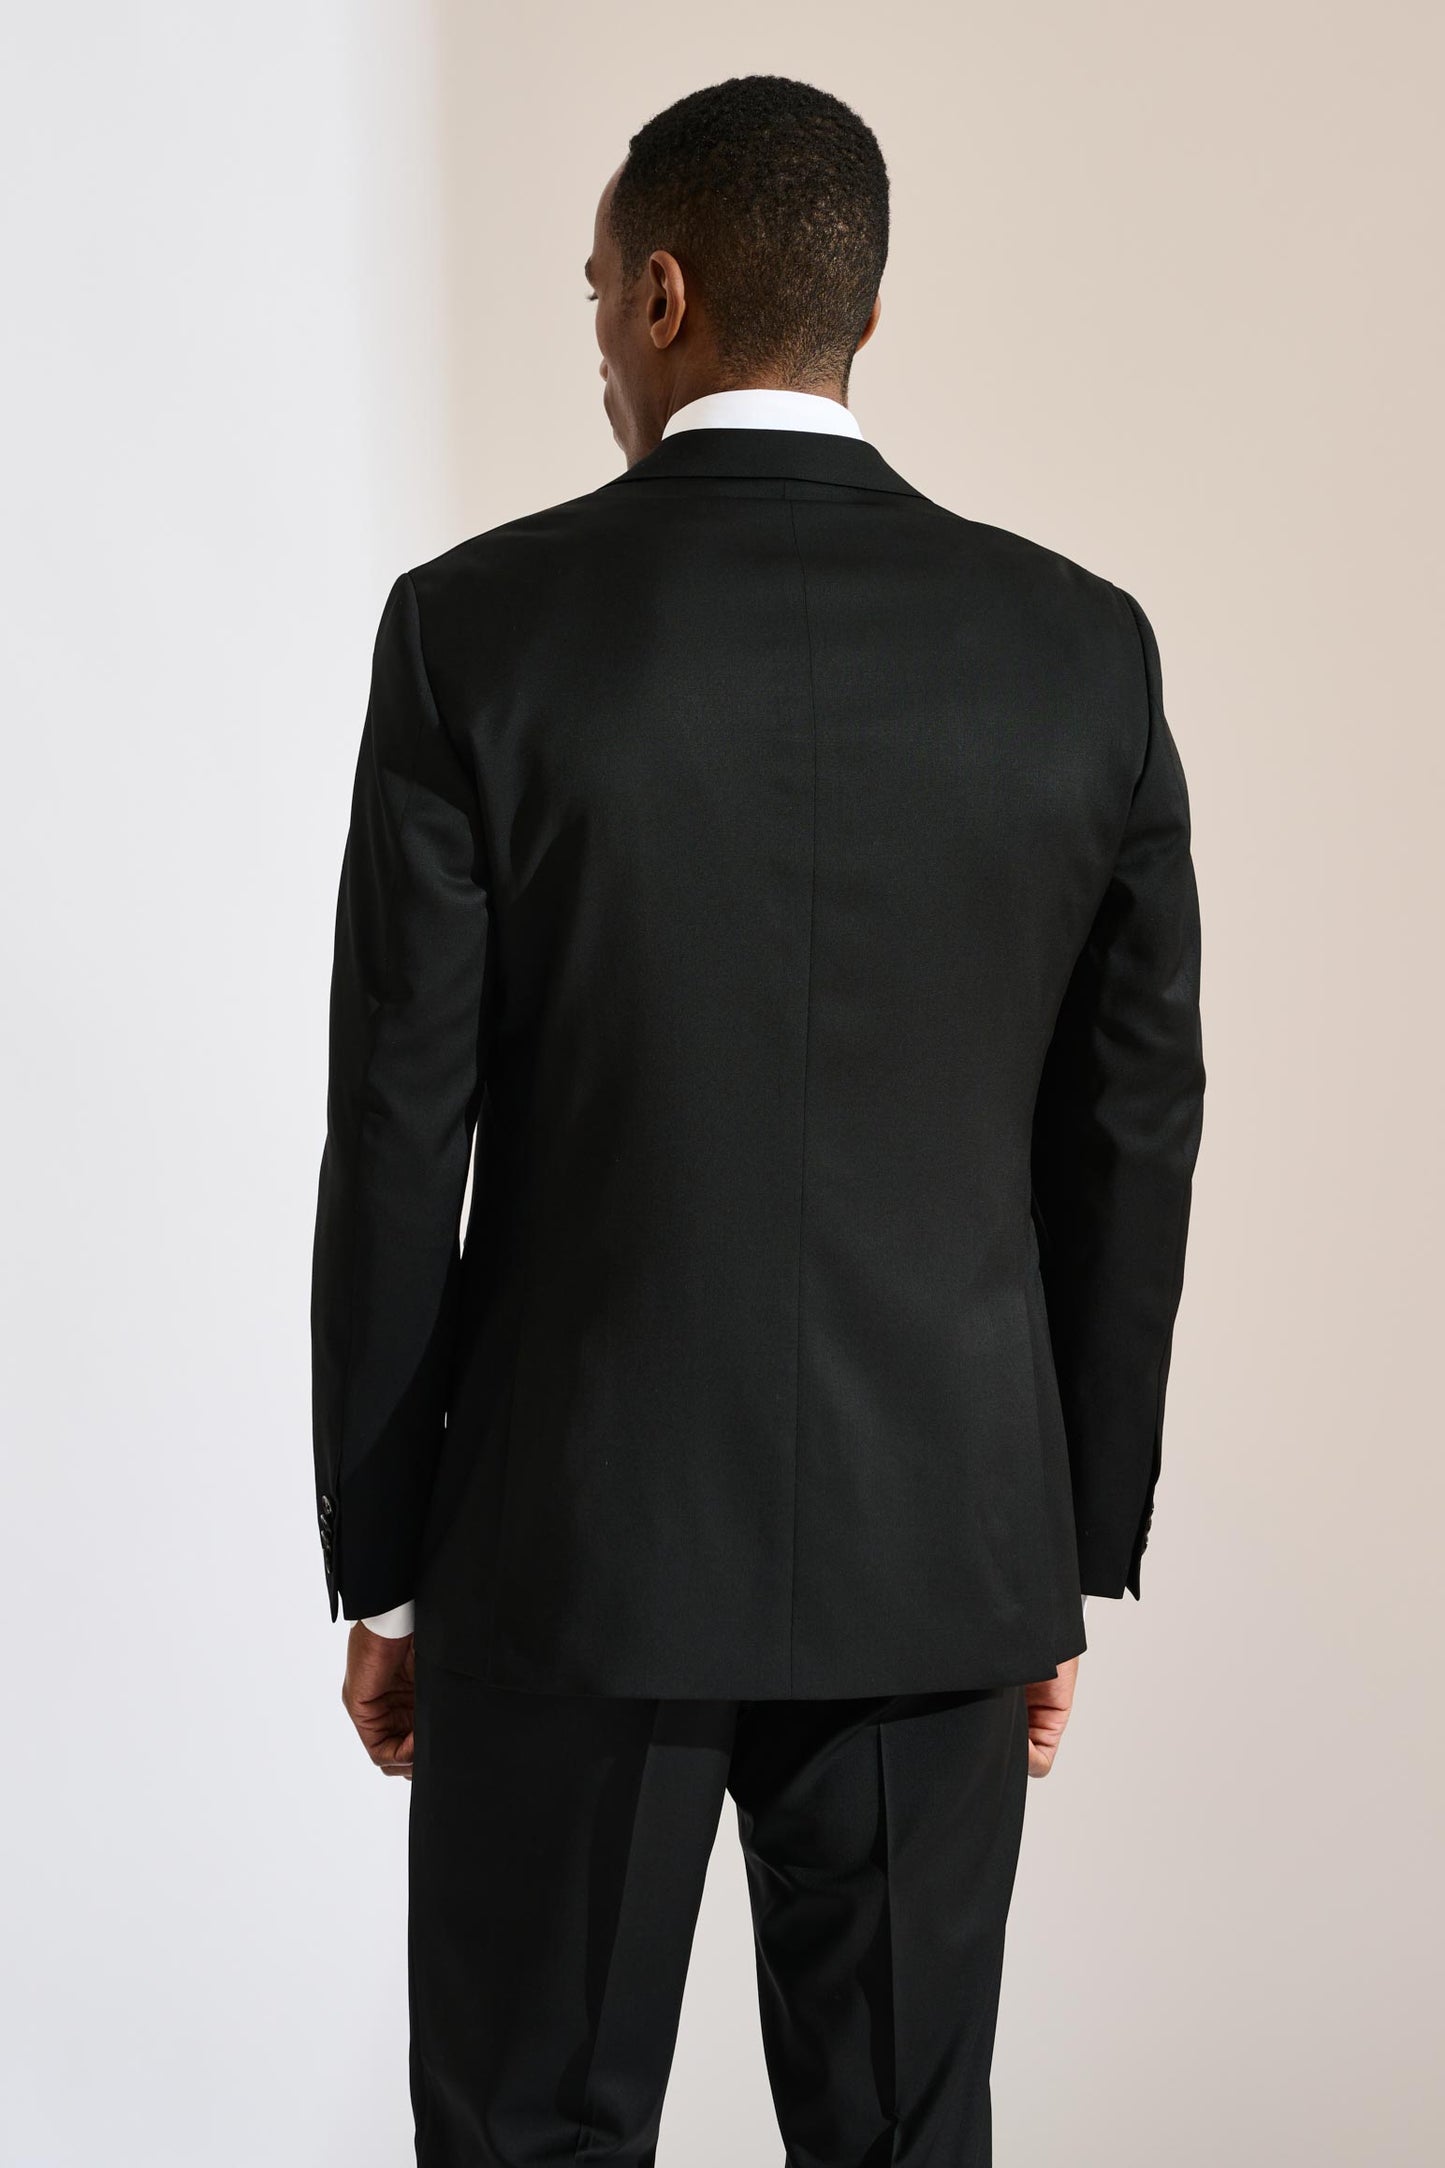 Soho Suit New Deluxe Black